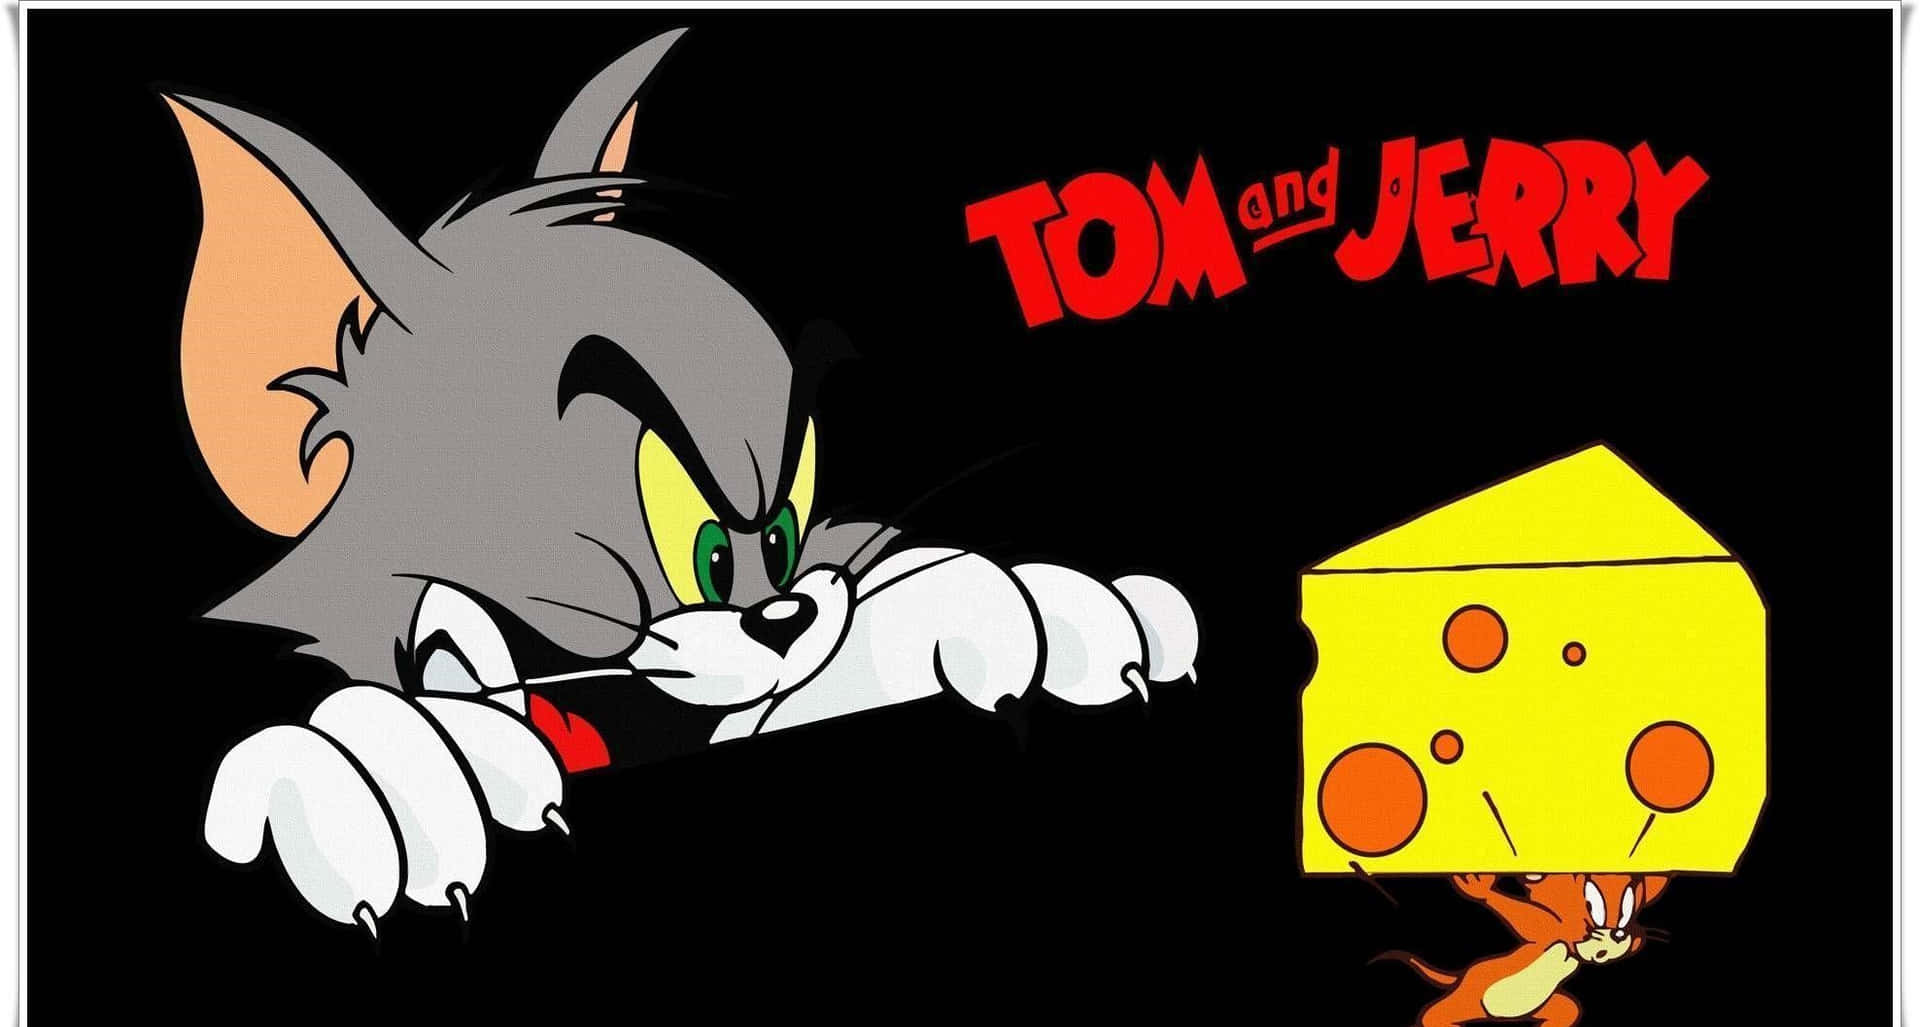 Tom og Jerry griner sammen i denne her sjove scene. Wallpaper